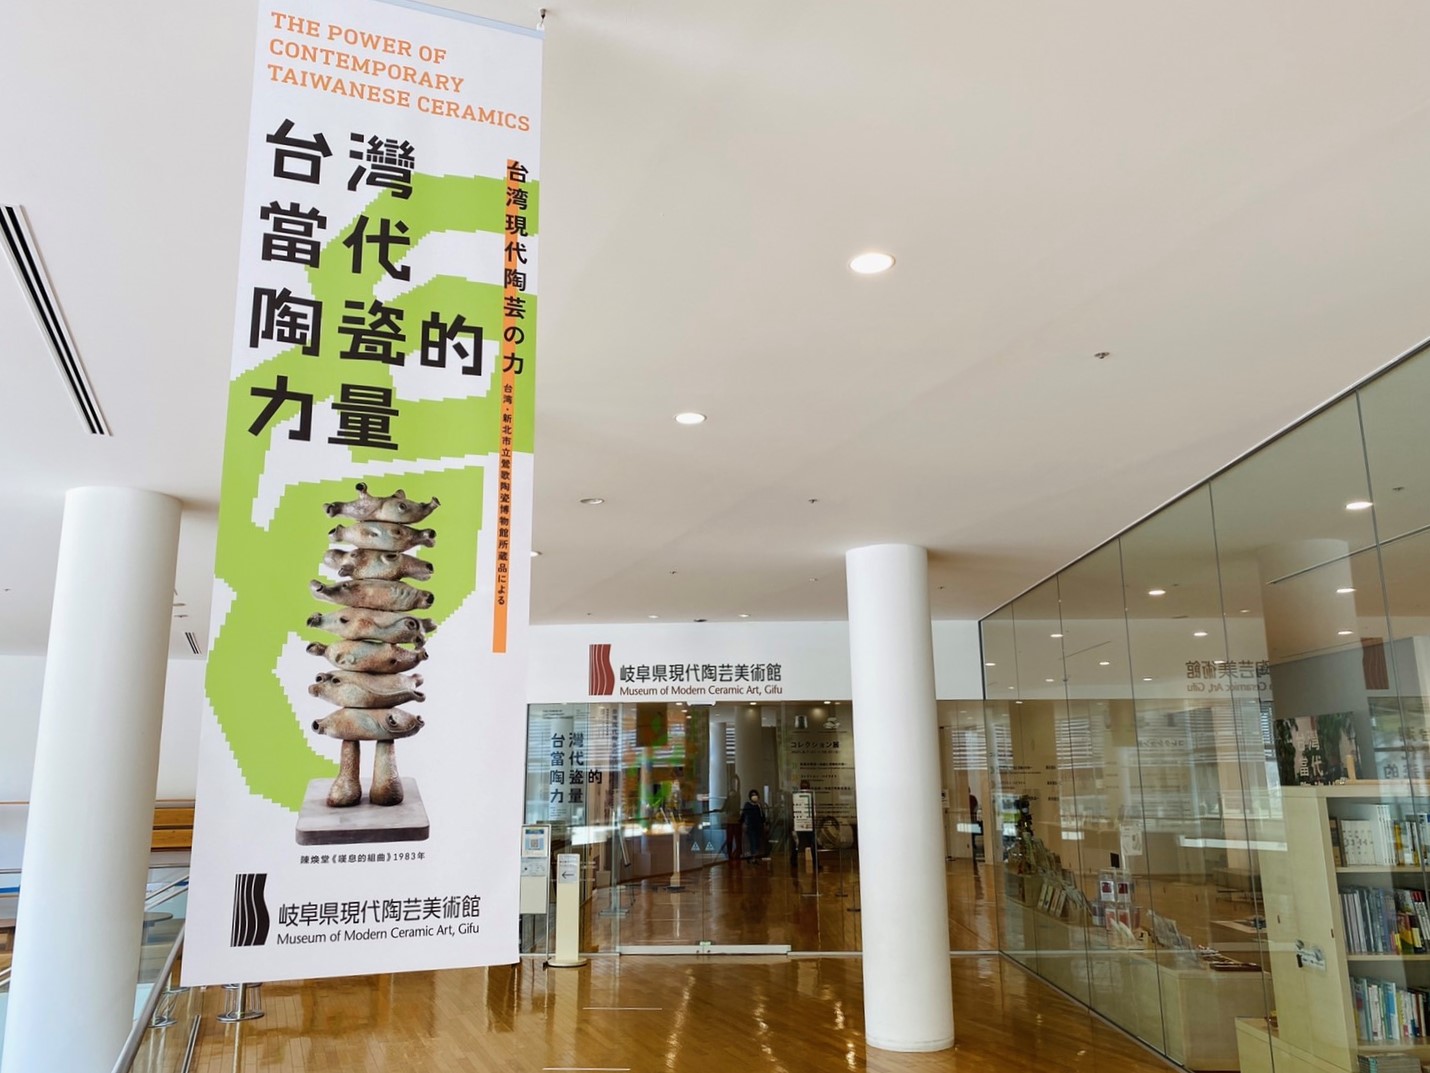 「臺灣當代陶瓷的力量」特展即日起於日本岐阜縣現代陶藝美術館登場亮相，展出陶博館86組件典藏品，來自72位藝術家的當代陶瓷藝術創作。